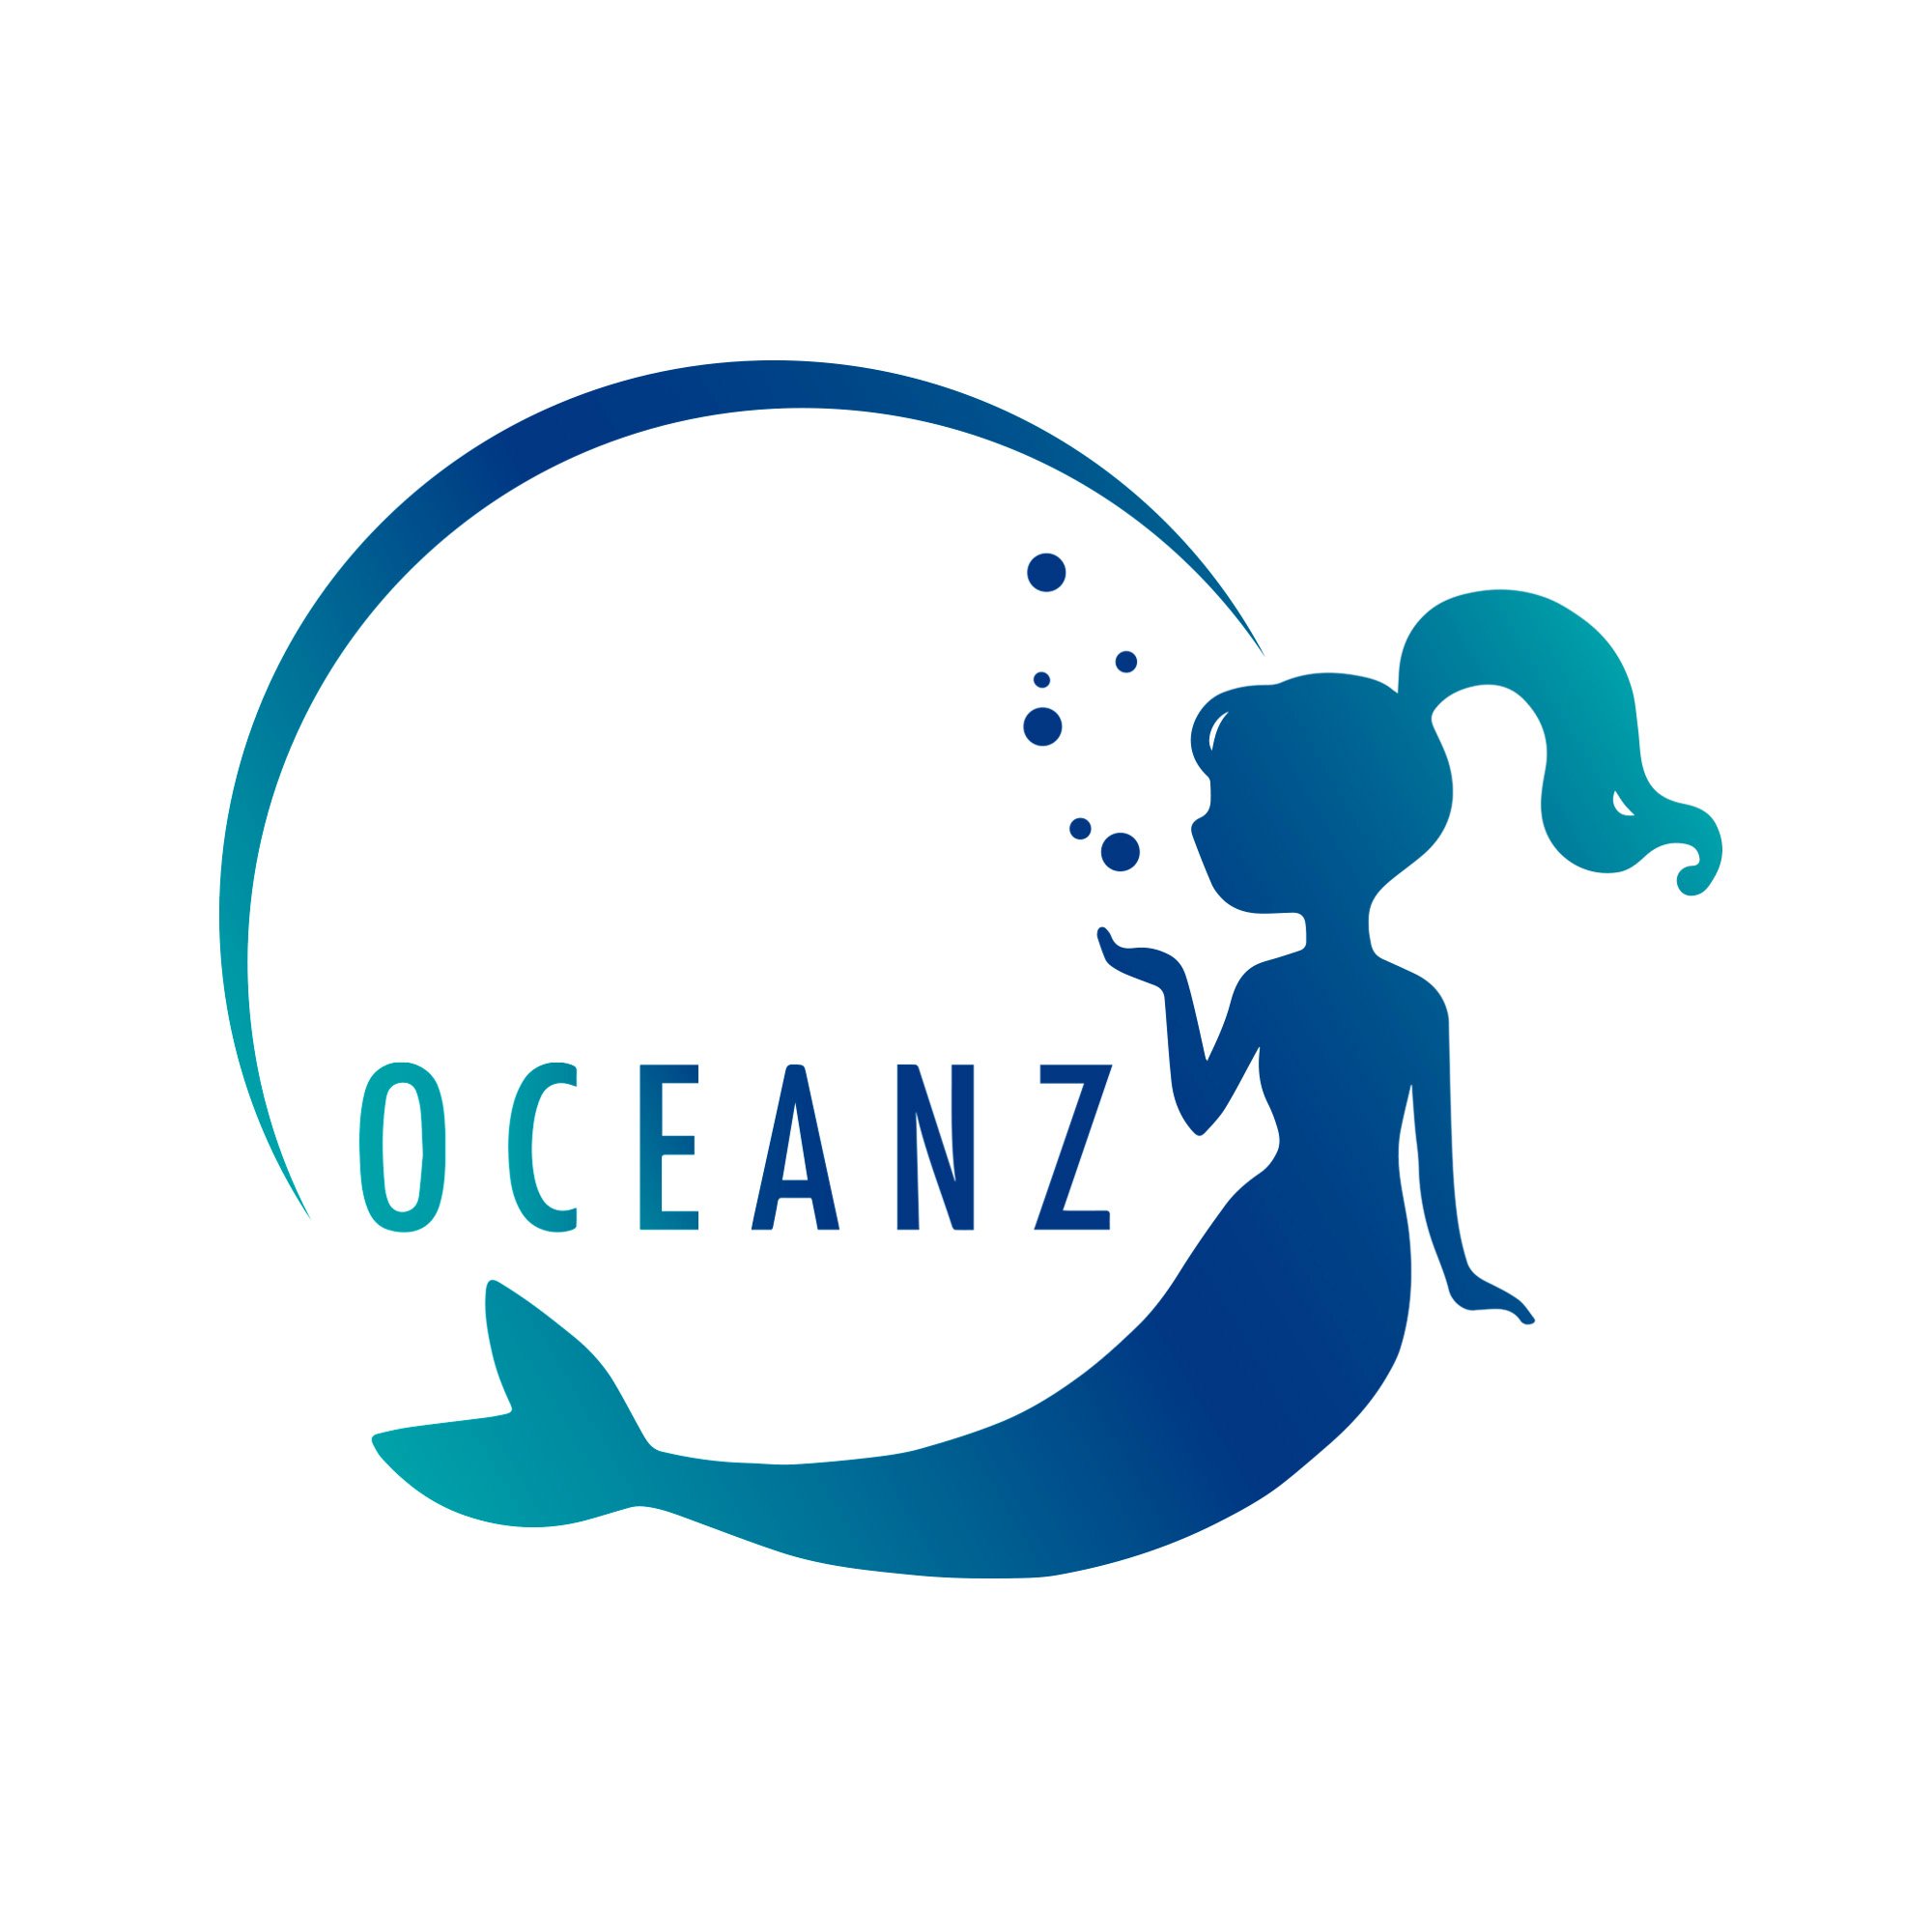 鹿児島県・奄美大島にあるマーメイドスイム専門店 OCEANZです！2021年から水族館でのマーメイドショーを毎年開催。マーメイドスイム体験から、マーメイドライセンス講習、マーメイドインストラクター講習まで幅広いメニューをご用意してお待ちしております✨このアカウントでは人魚のココナが発信中🧜‍♀️💙